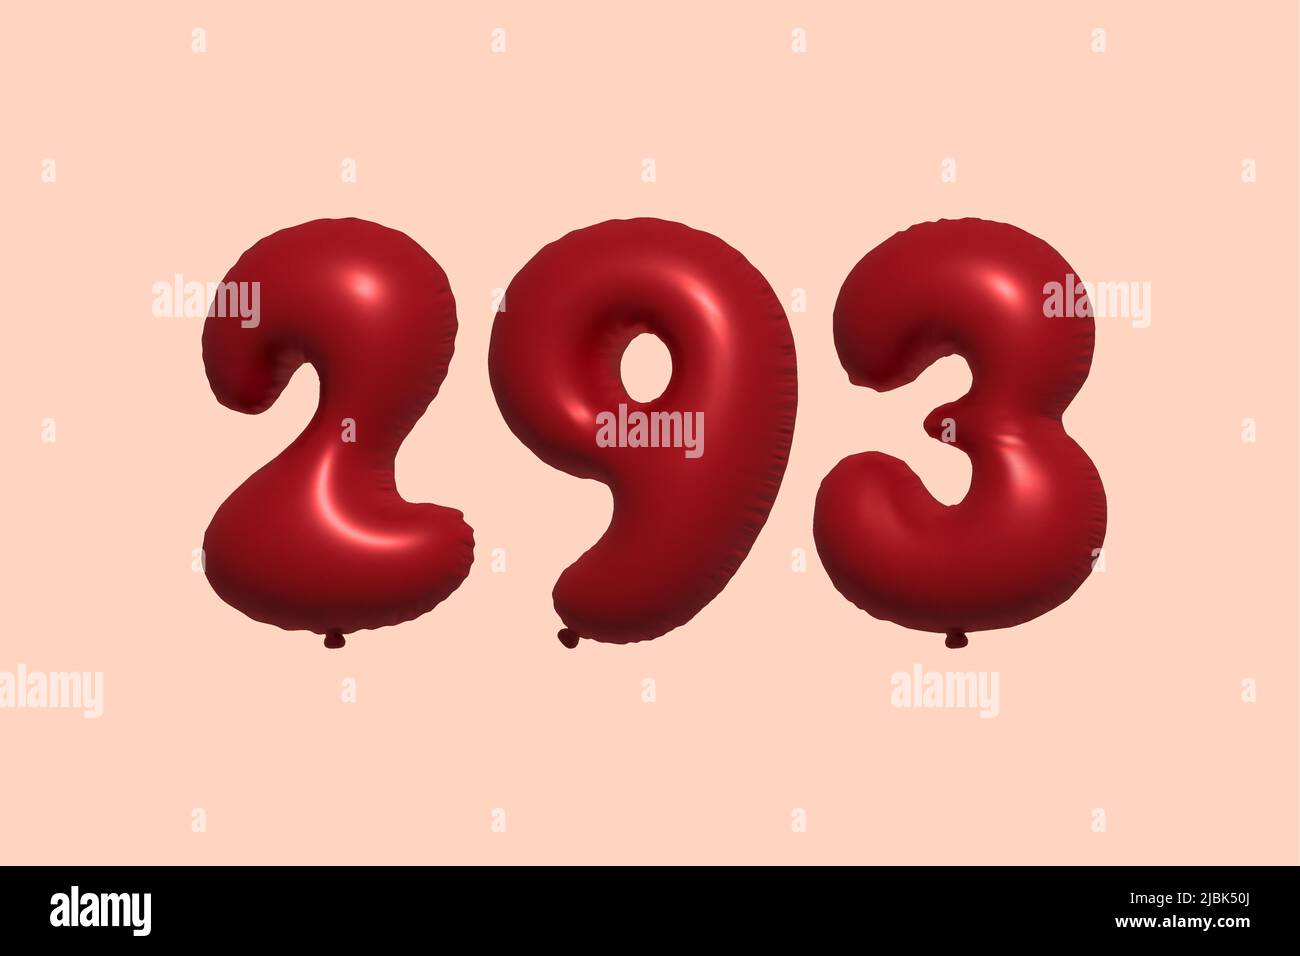 palloncino in numero 293 3d realizzato con rendering realistico di palloncino in aria metallica 3d. 3D palloncini di elio rosso per la vendita decorazione Party compleanno, celebrare anniversario, Vacanza nuziale. Illustrazione vettoriale Illustrazione Vettoriale